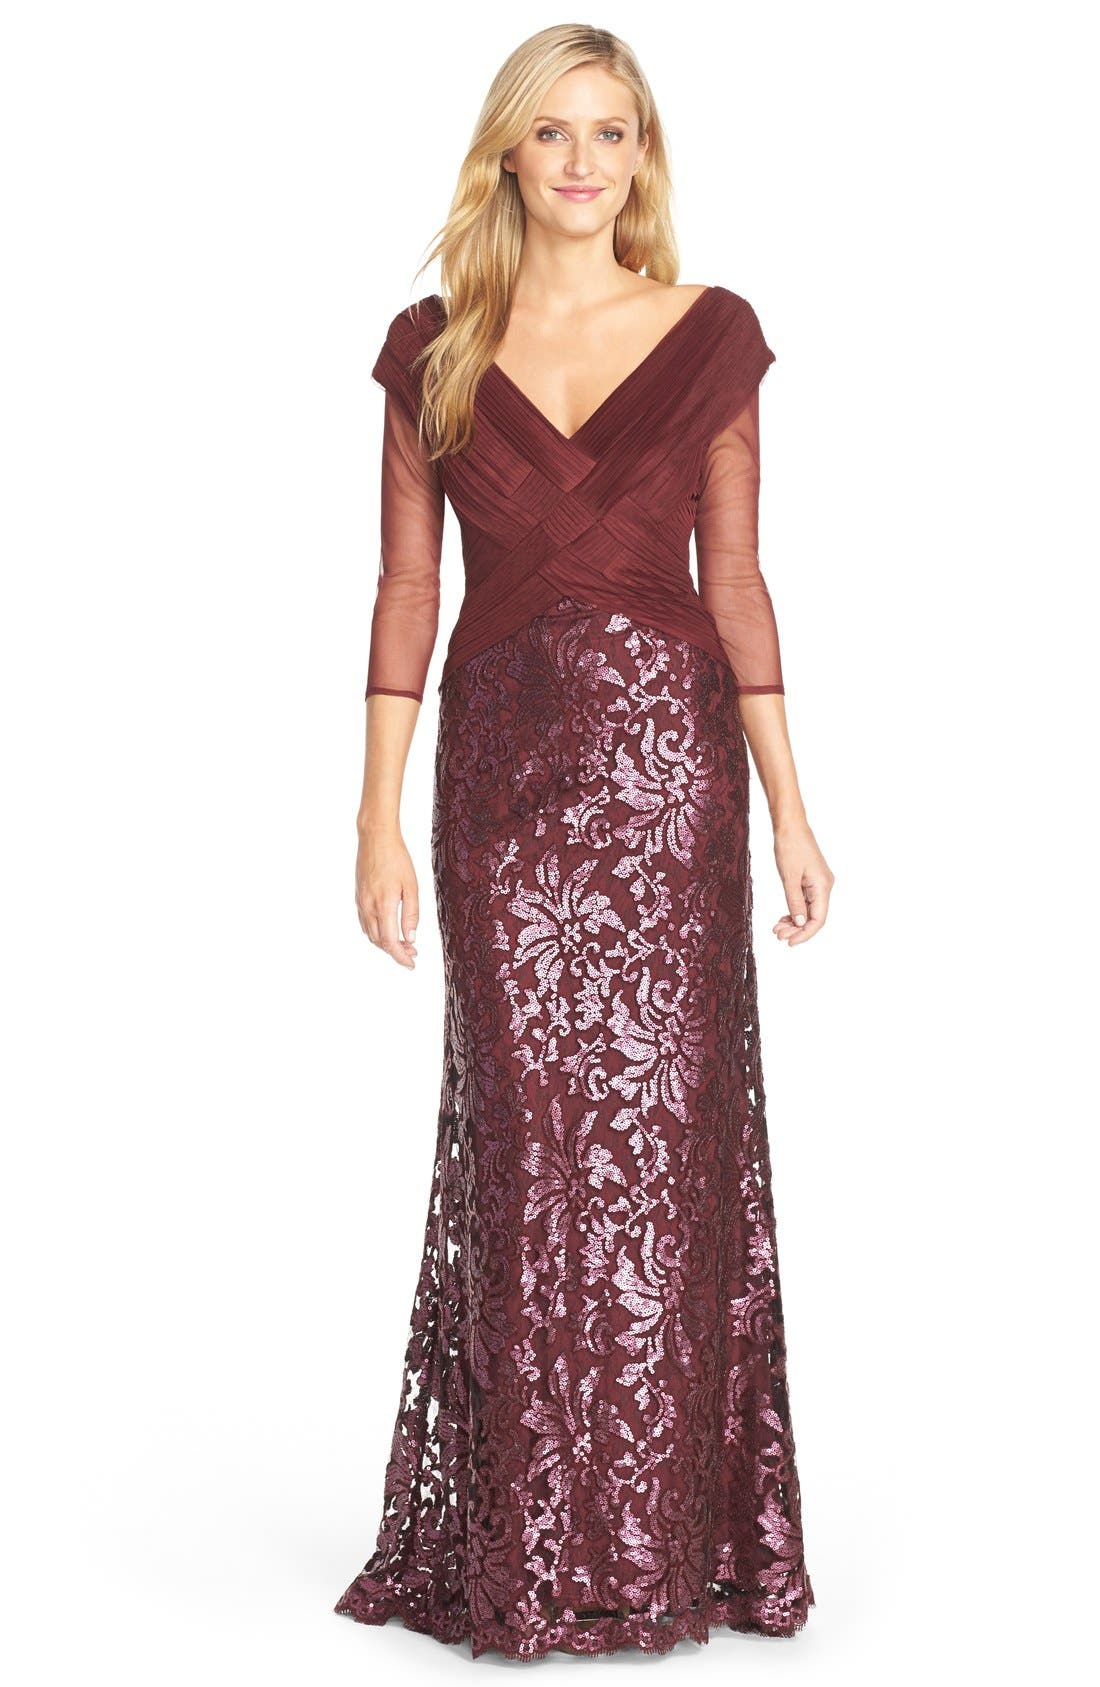 bloomingdales burgundy dress